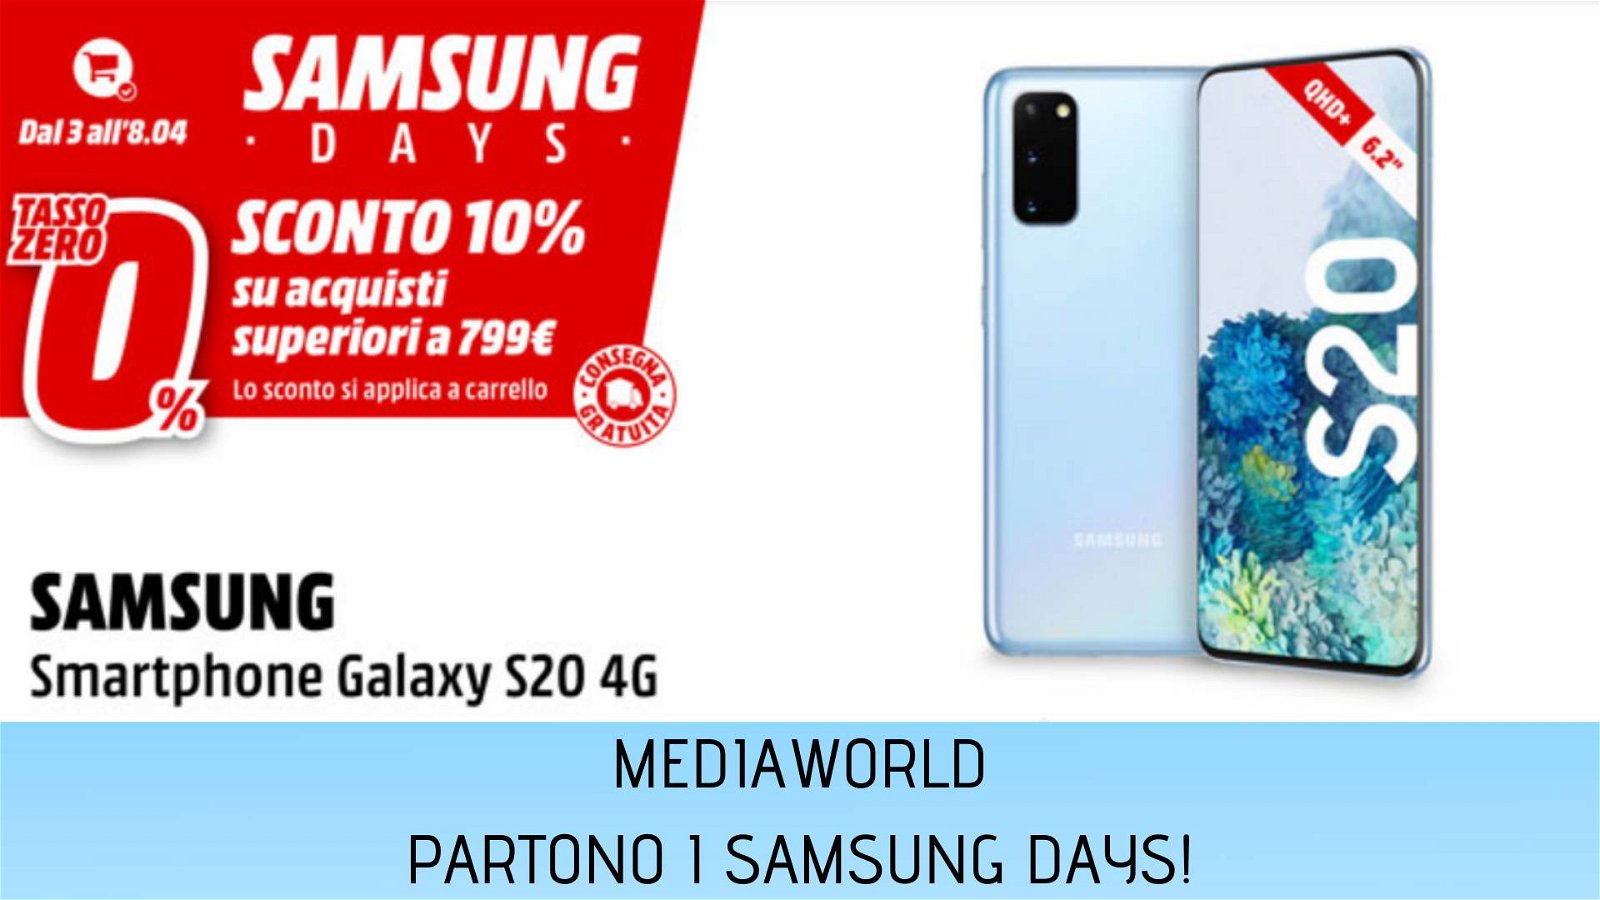 Immagine di Samsung Days: extra sconto del 10% e consegna gratuita da MediaWorld